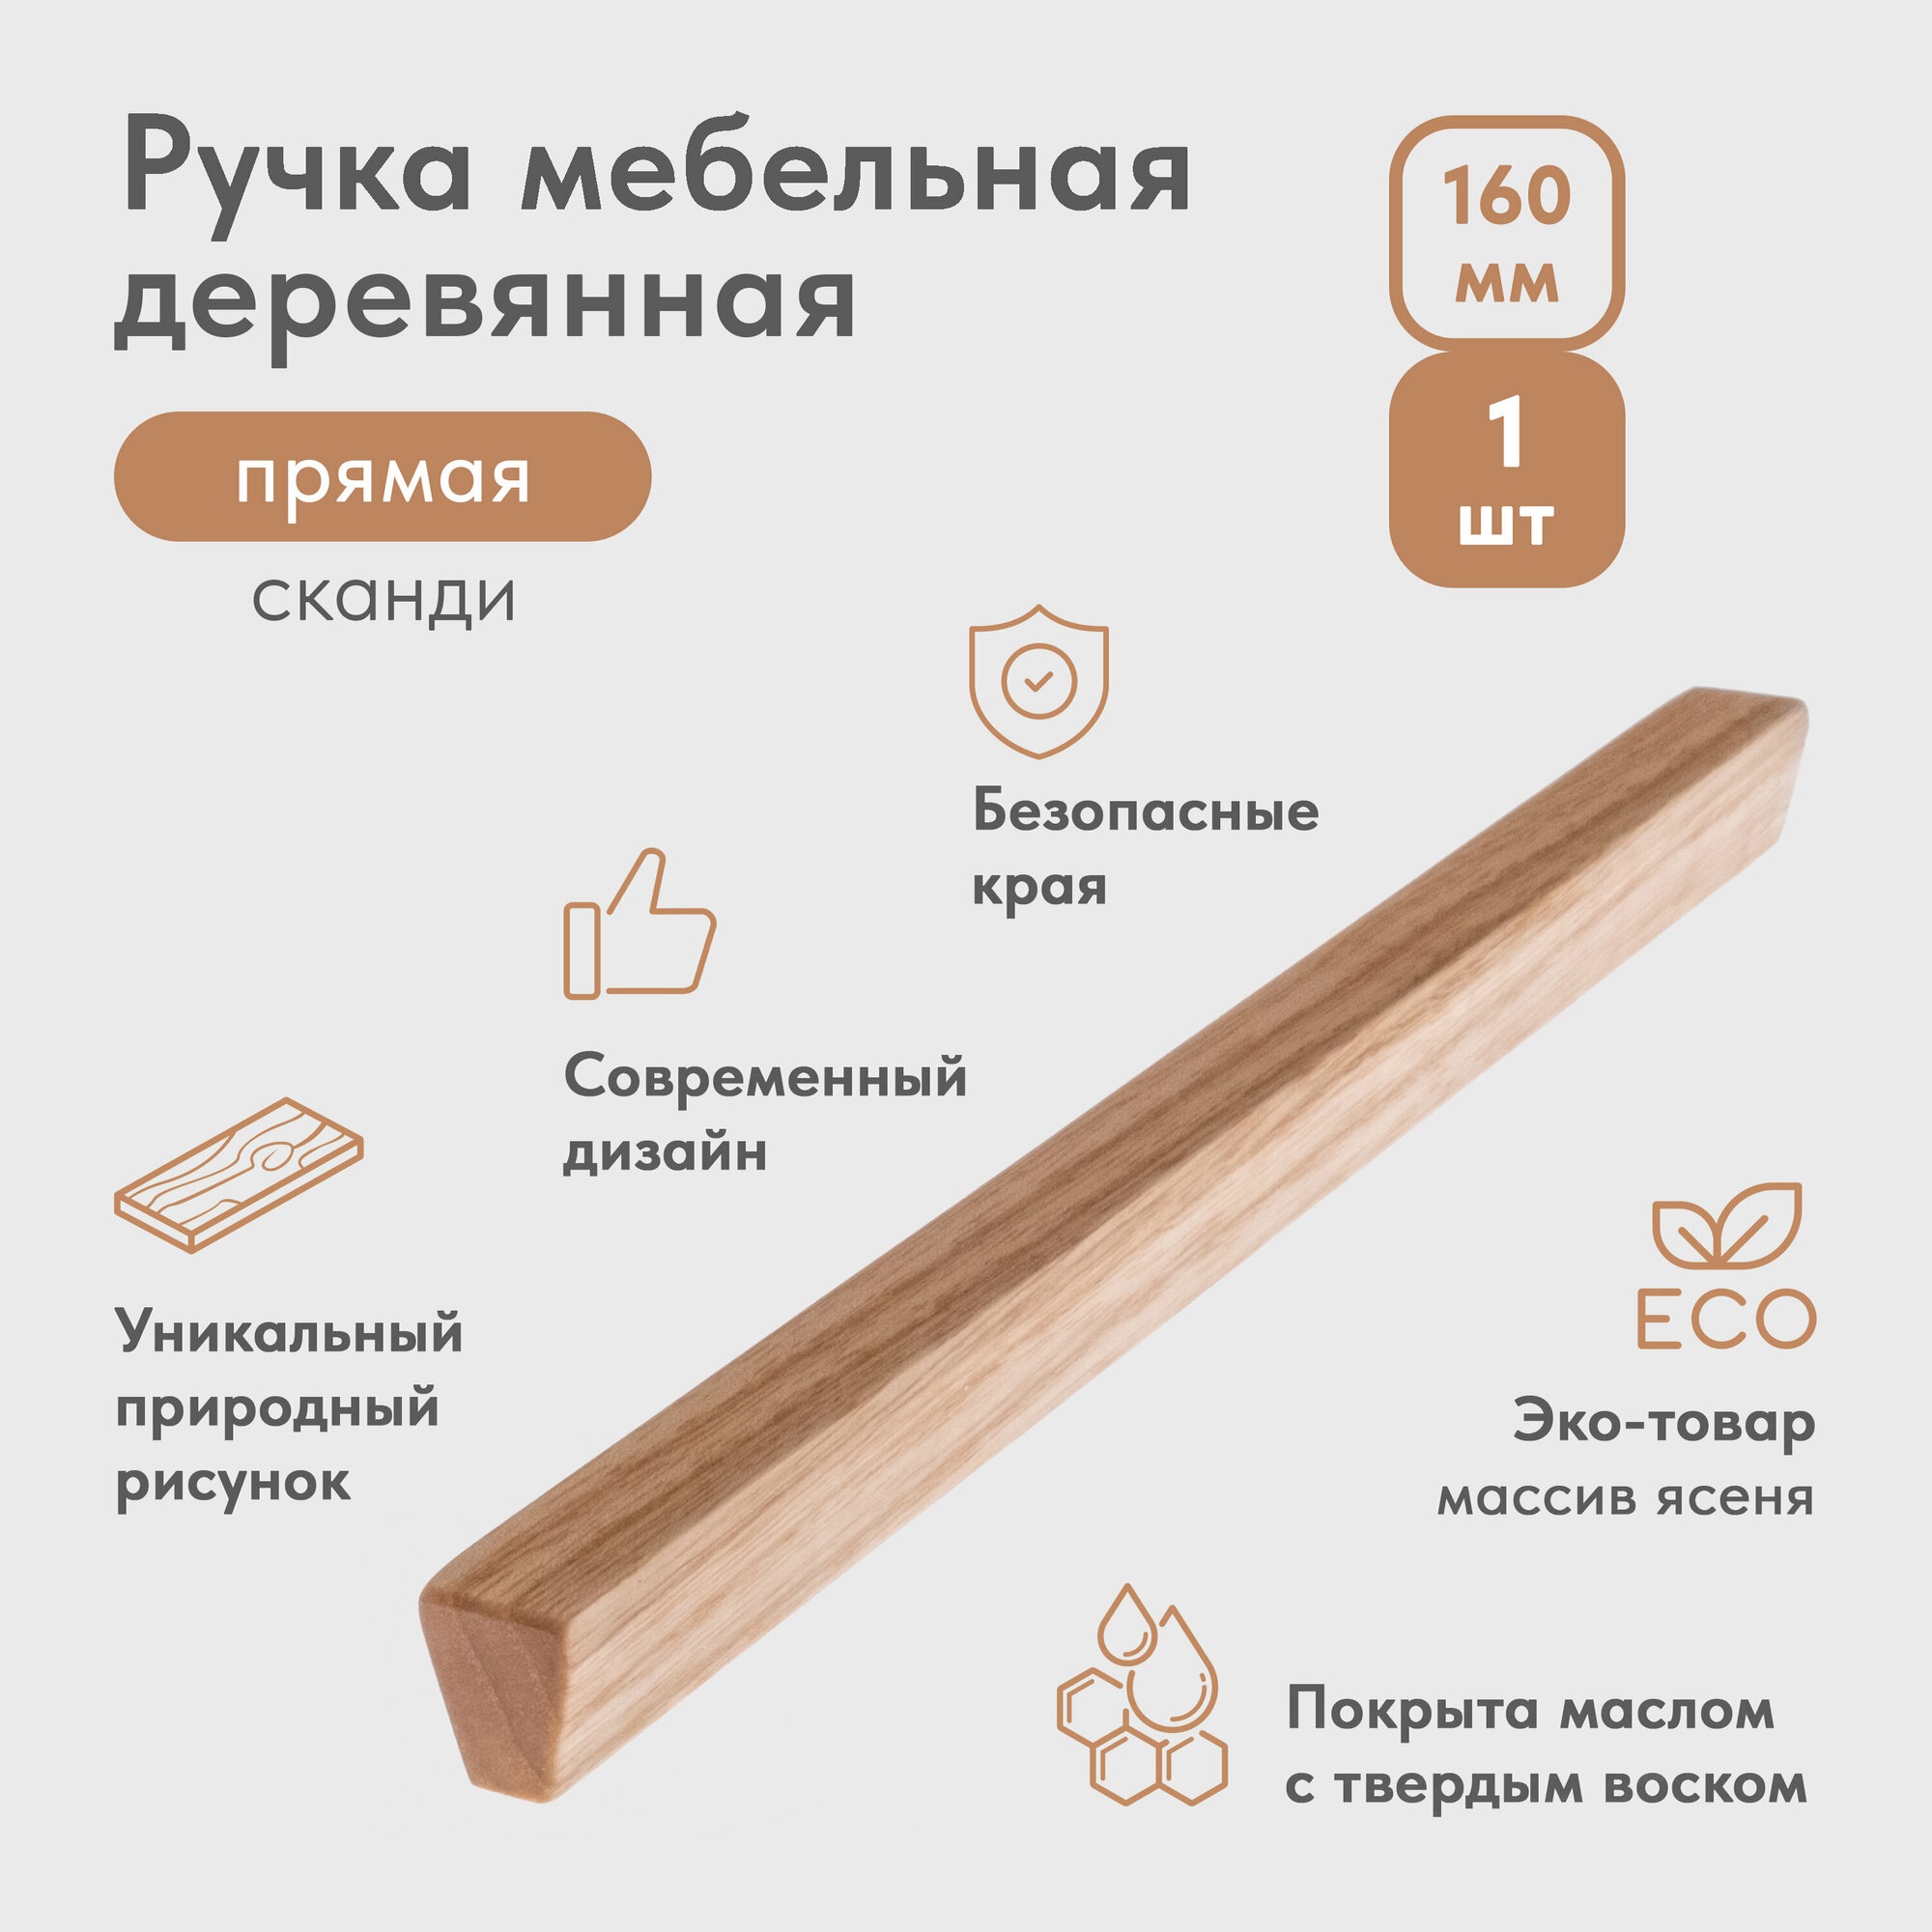 Ручка мебельная деревянная прямая сканди-стиль 160 мм (1 шт)